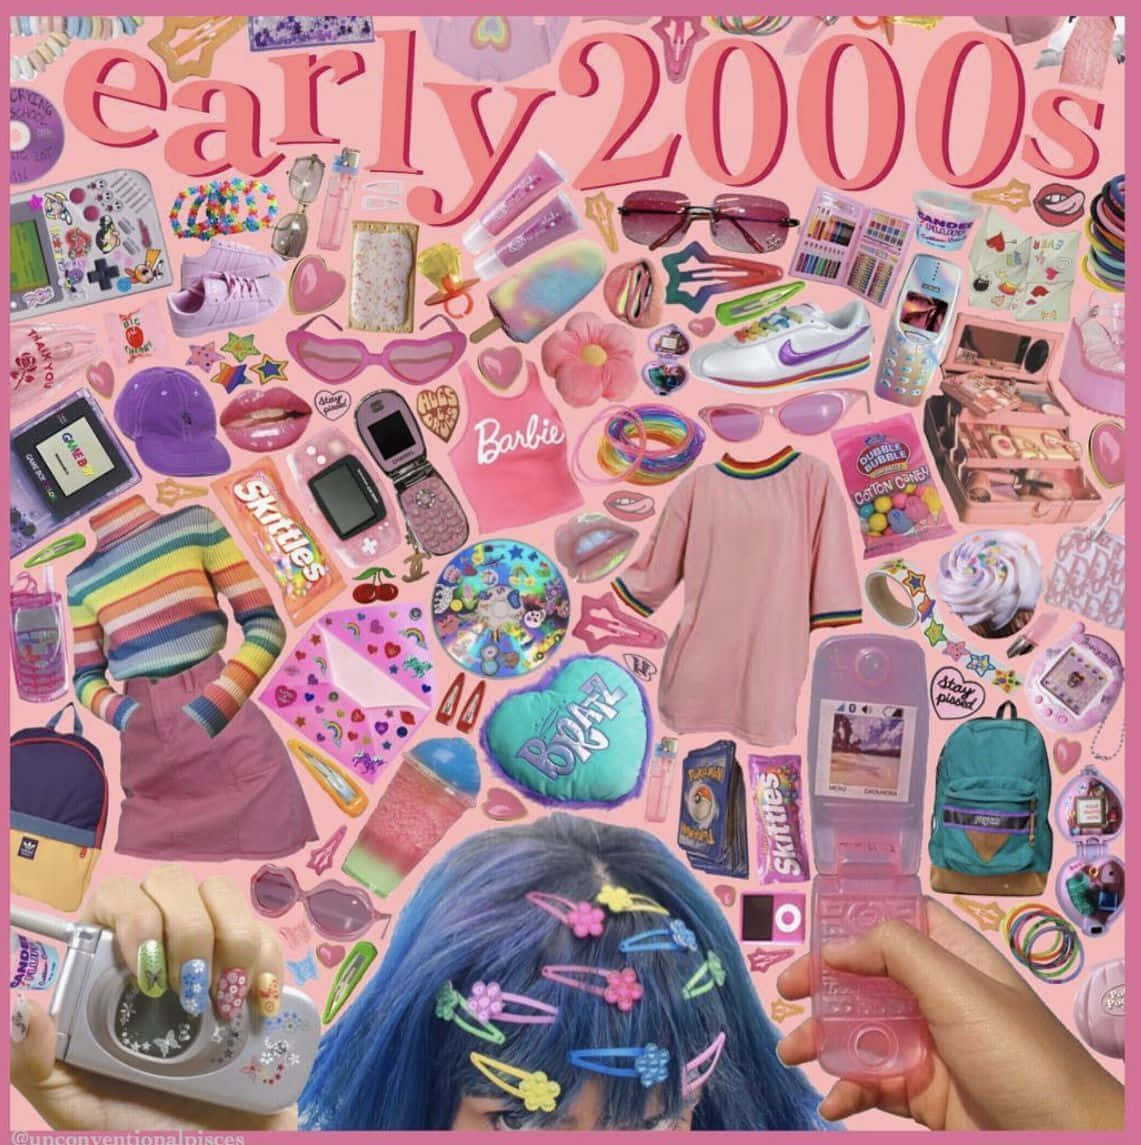 Principiosde Los Años 2000 - Un Collage De Cabello Rosa, Accesorios Y Otros Objetos